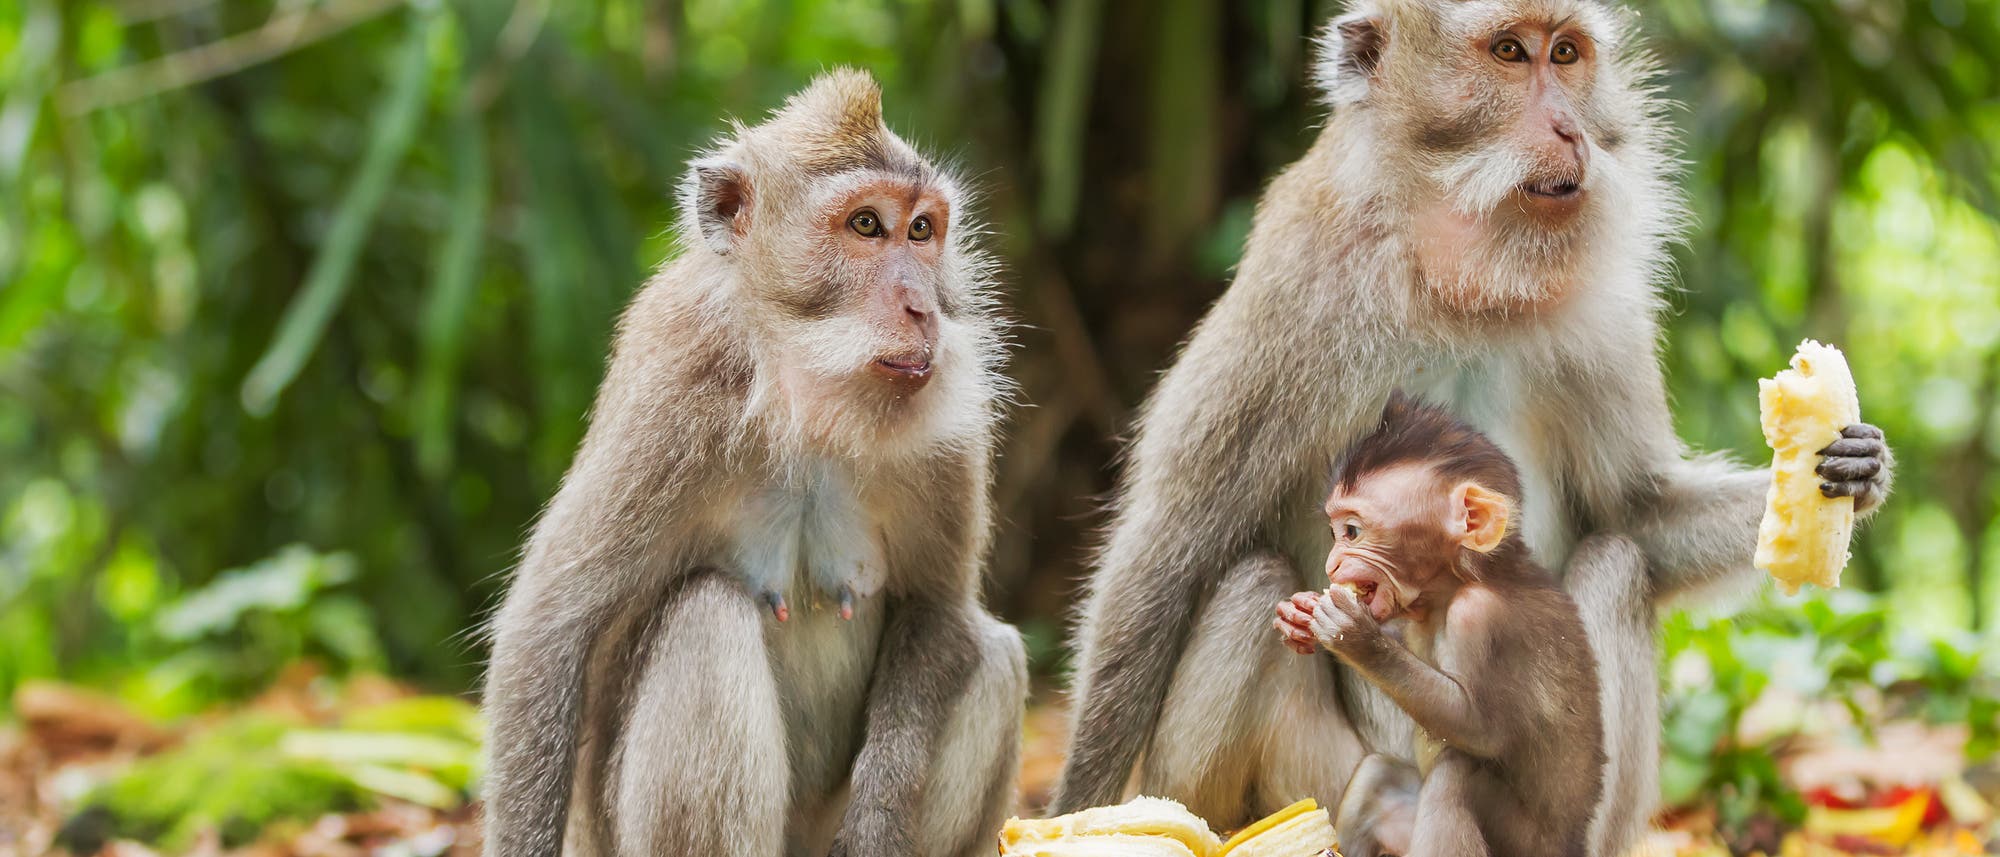 Zwei erwachsene Affen auf Bali essen Bananen, im Vordergrund ein halbwüchsiger Affe